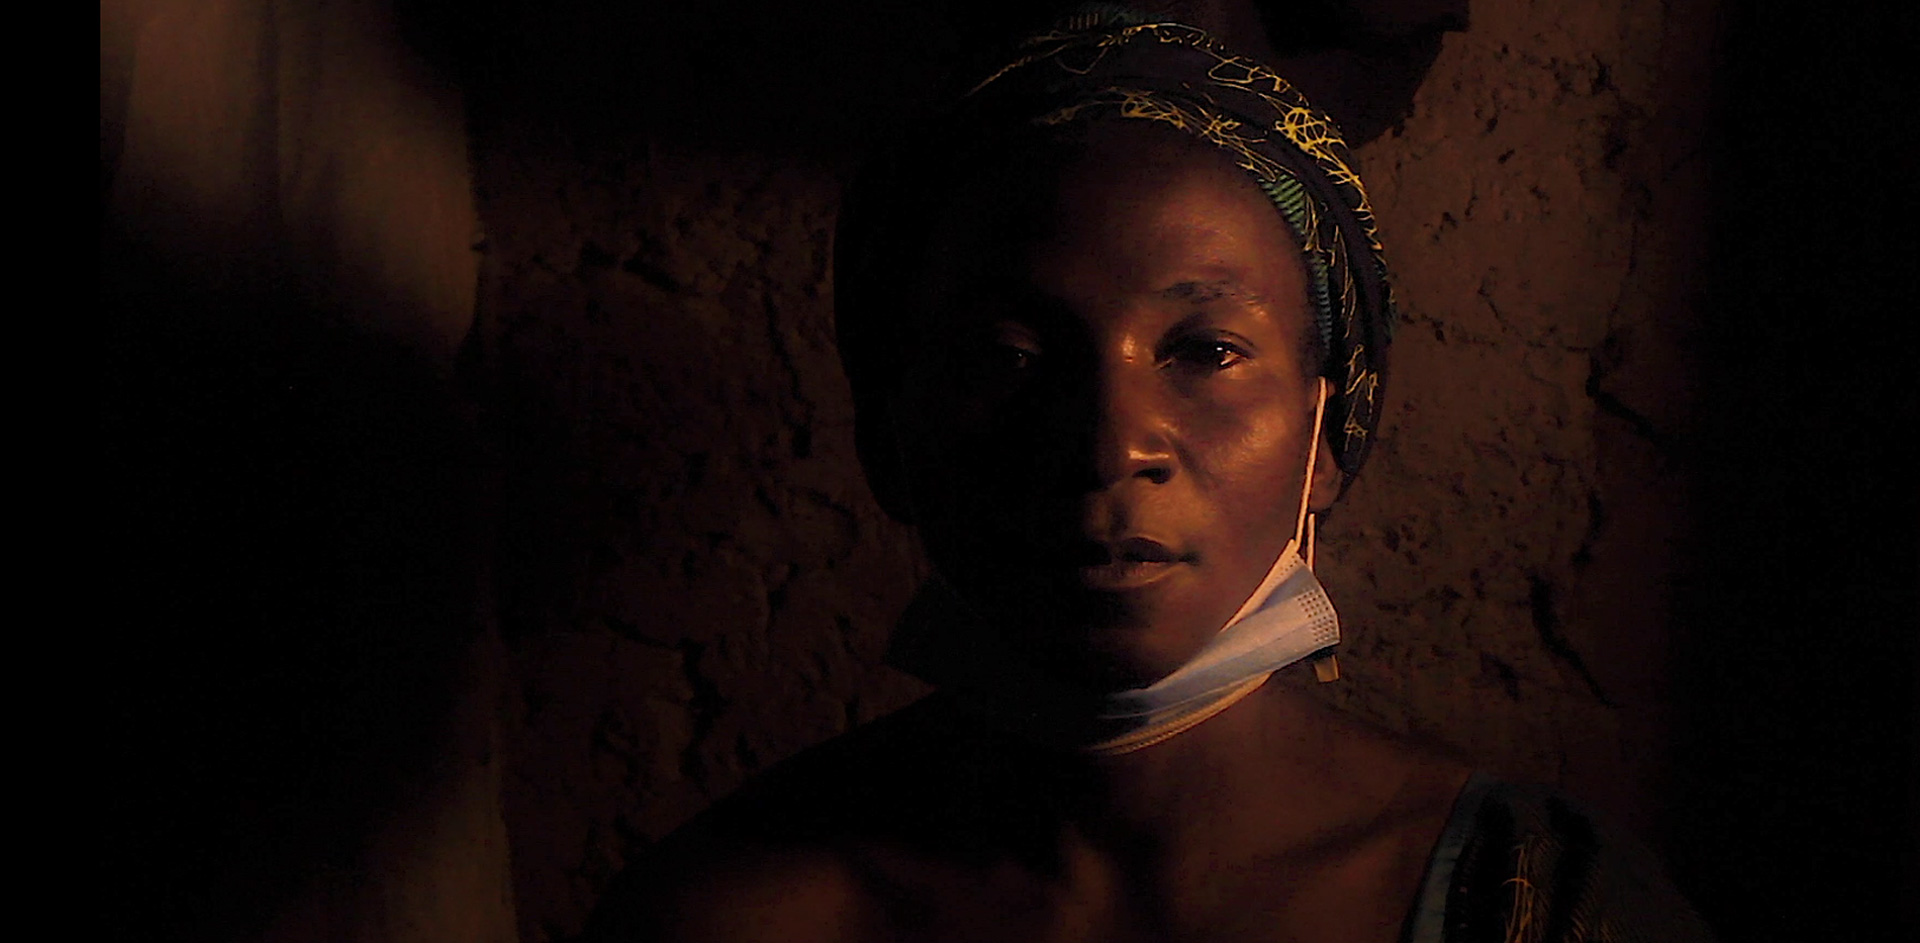 Afrique subsaharienne restaurer les vies brisees portrait femme hajaratu